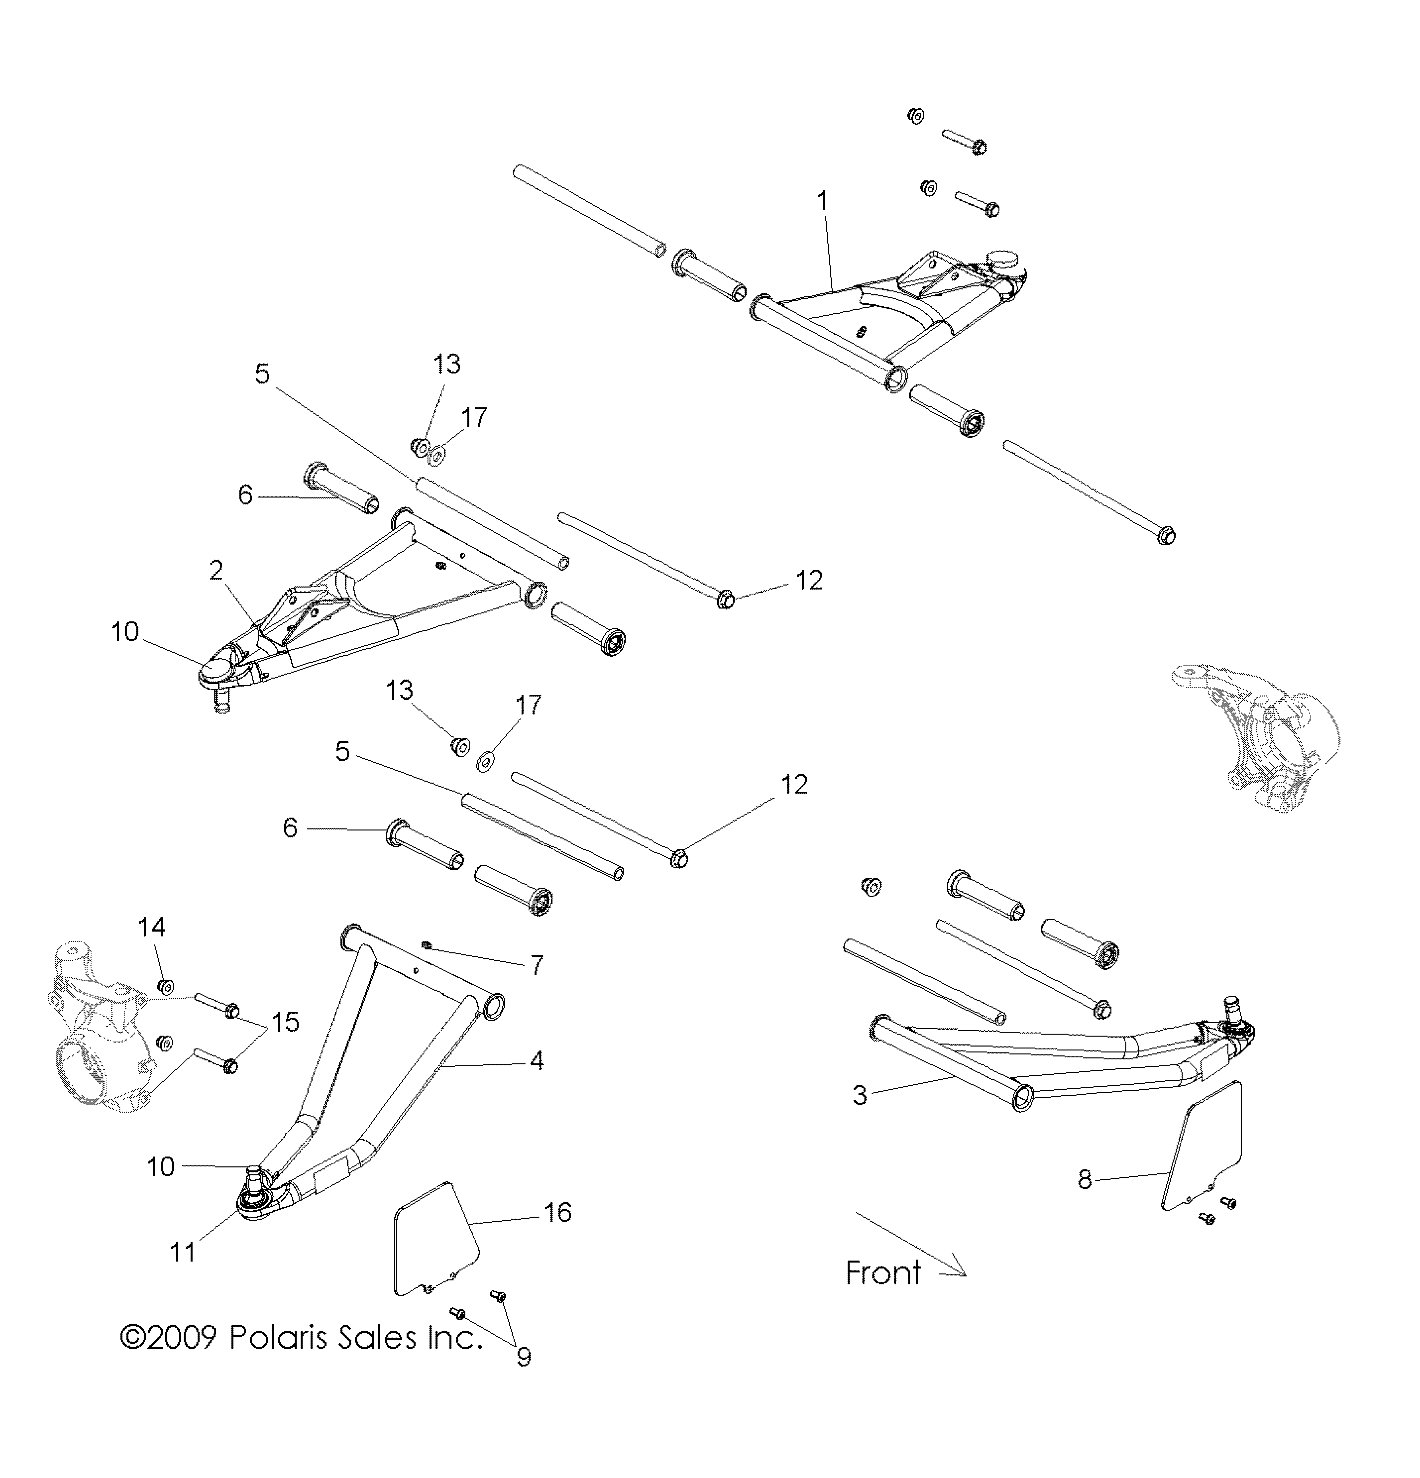 Foto diagrama Polaris que contem a peça 1015453-458